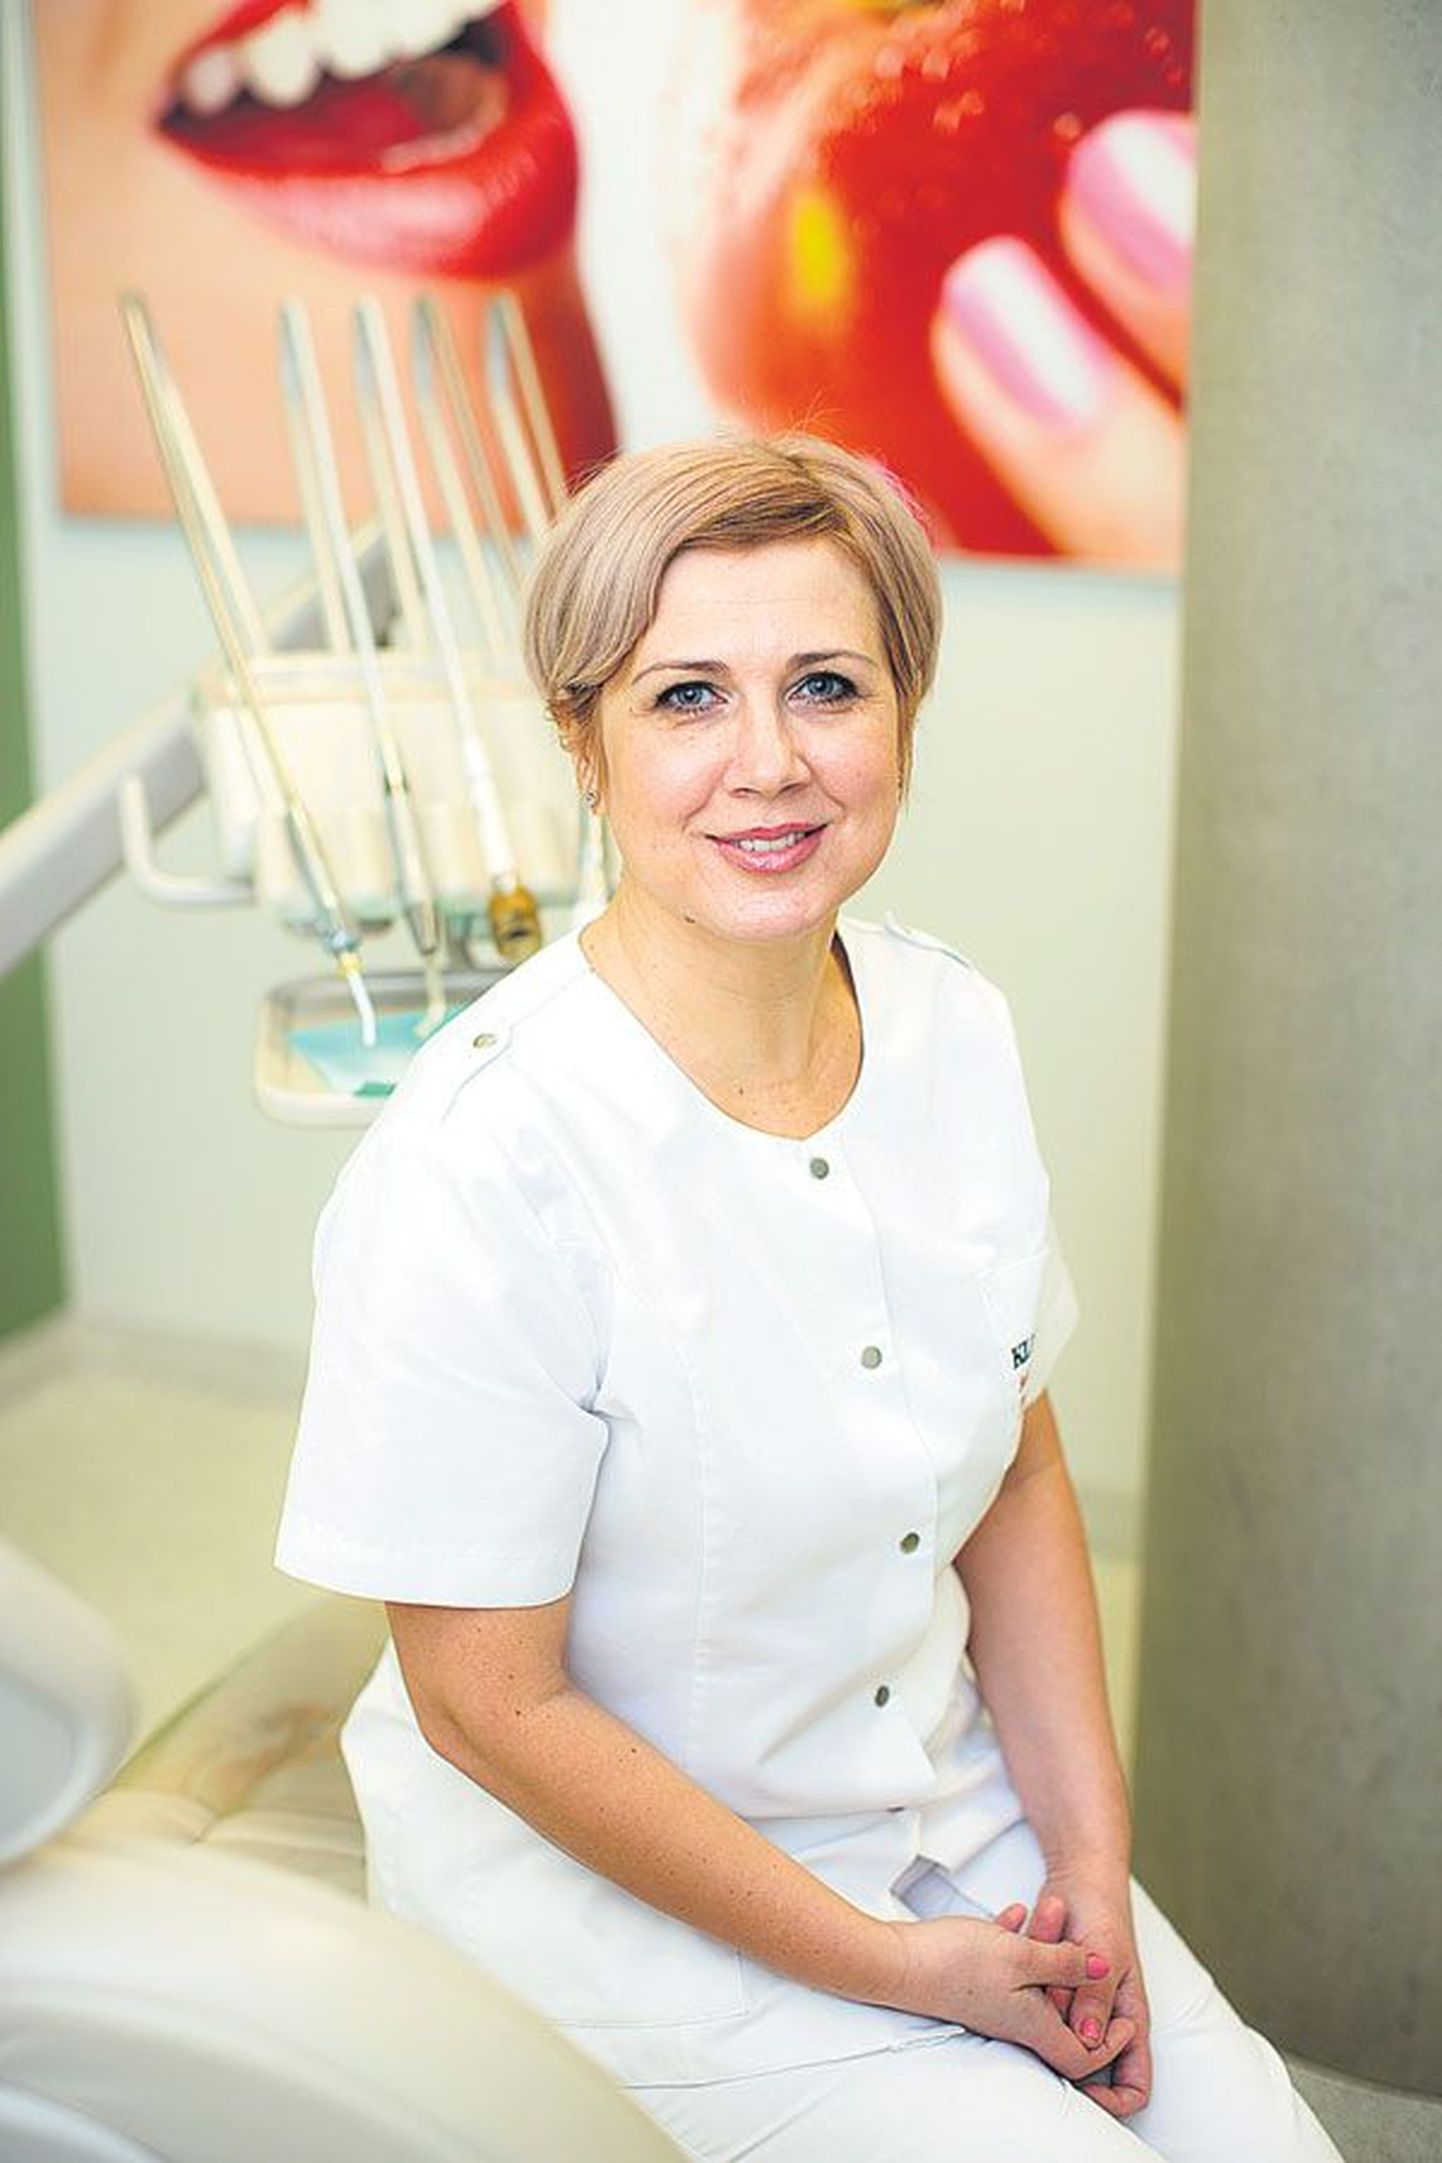 Юлия Янпол, работающая стоматологическим гигиенистом в таллиннской Kliinik 32, переехала в Эстонию по приглашению отца в 1989 году.